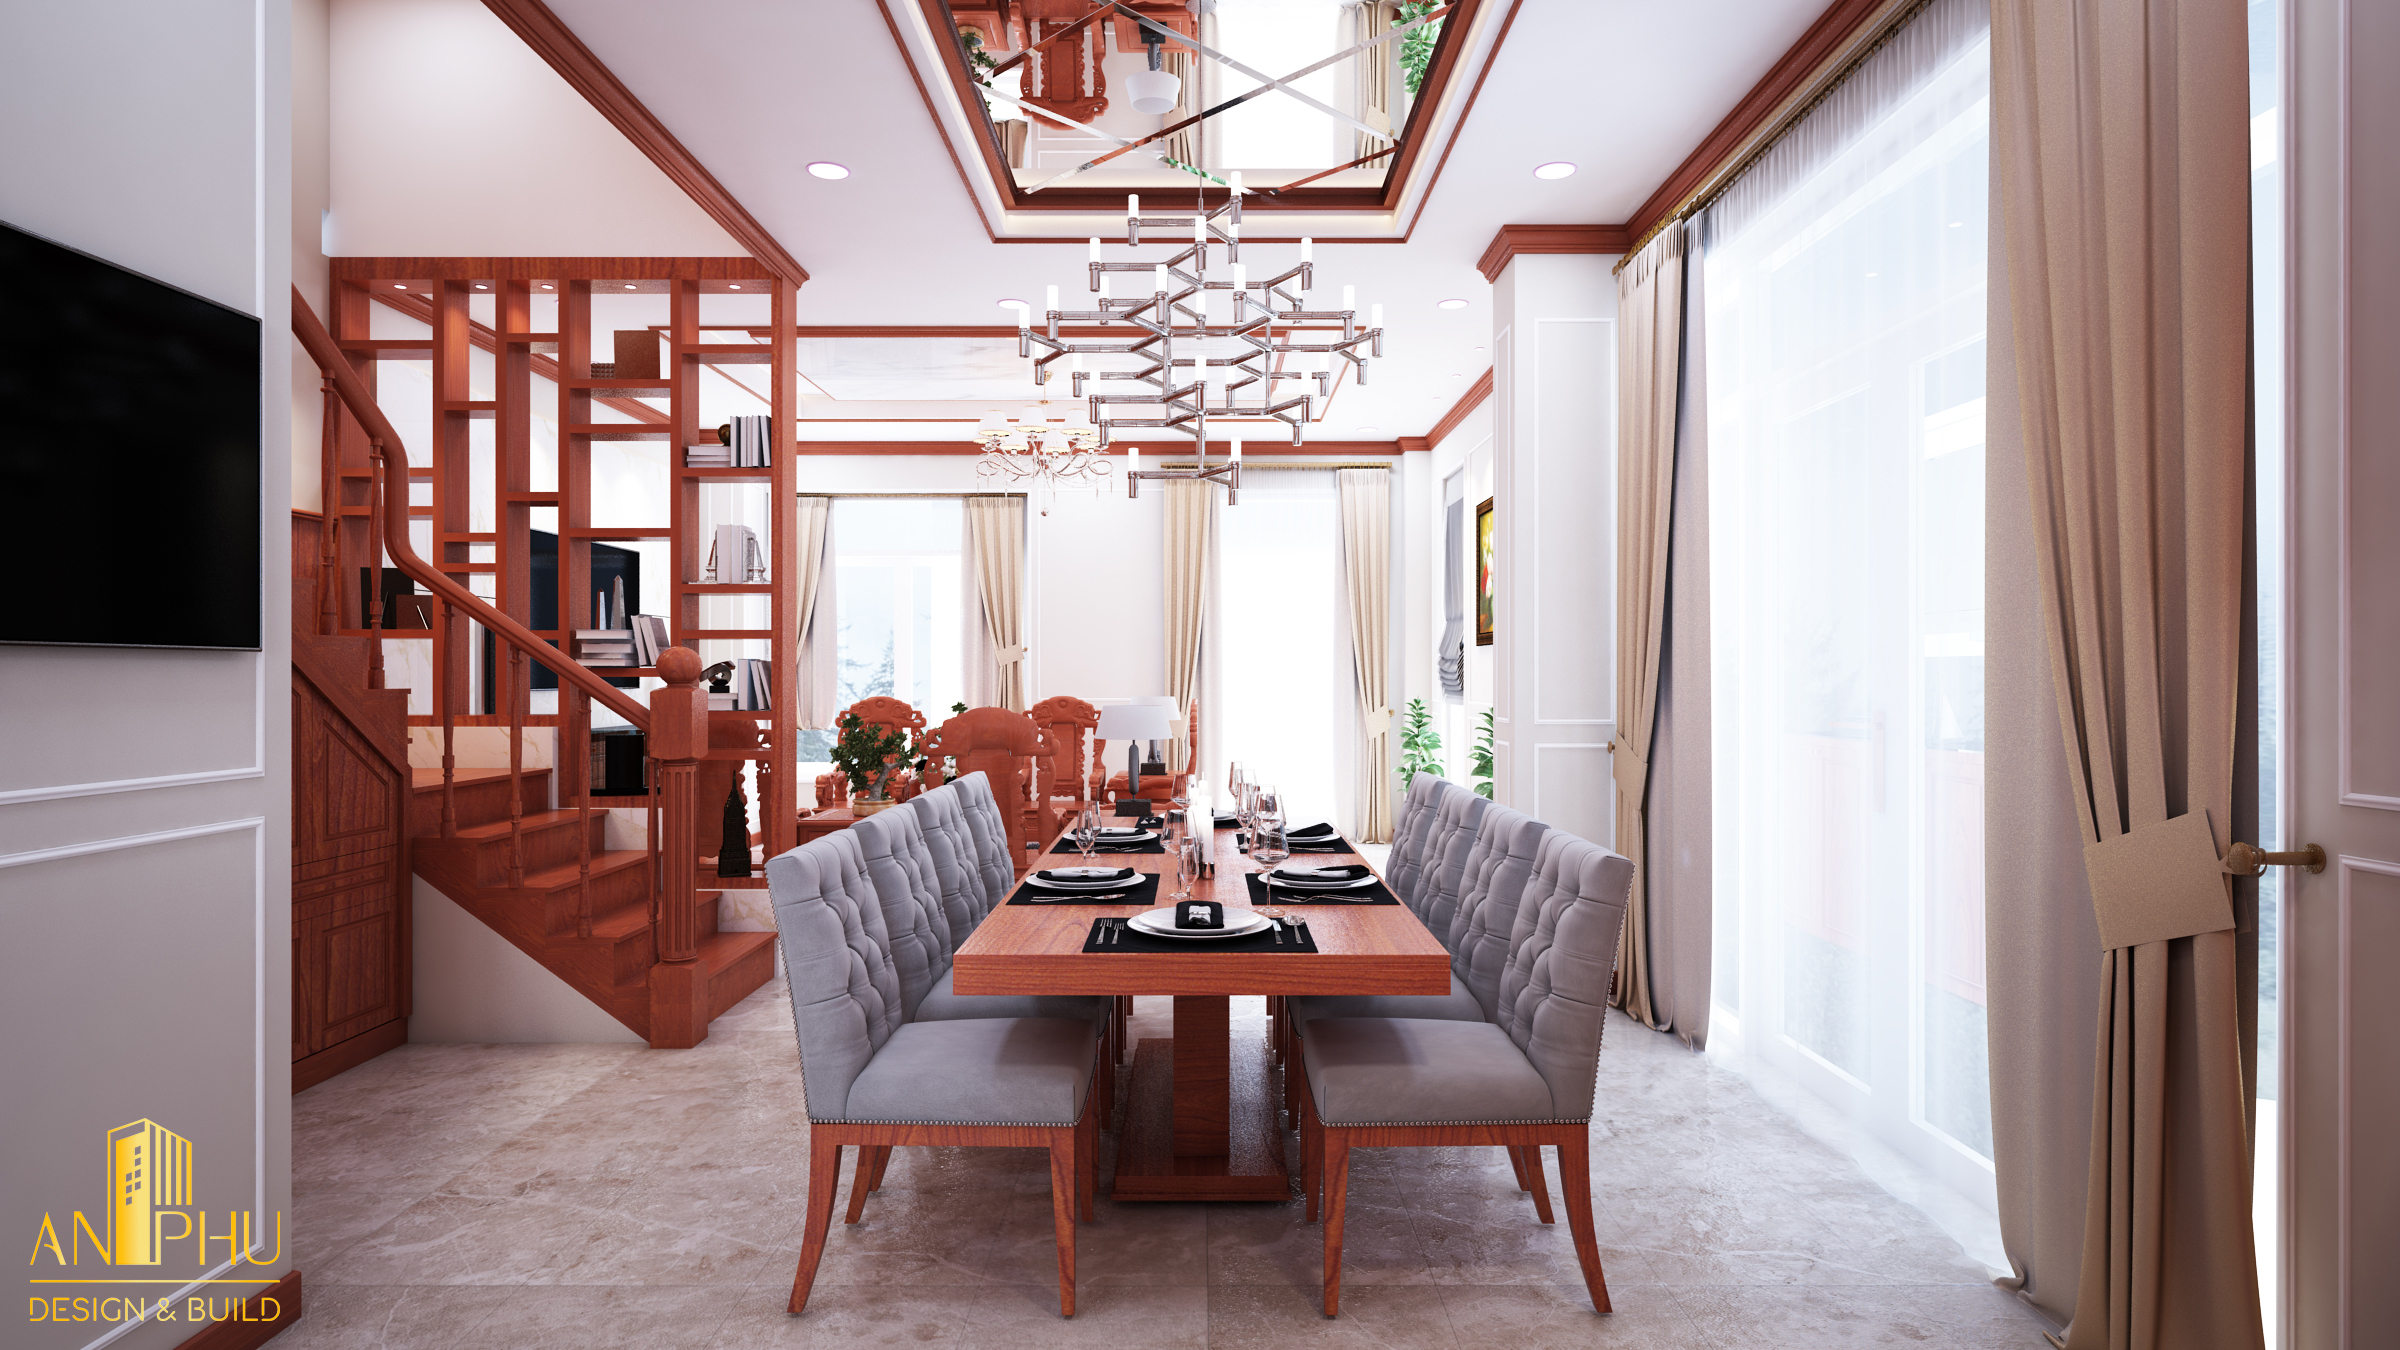 Không gian phòng ăn được thiết kế đầy đủ tiện nghi với nội thất gỗ sang trọng